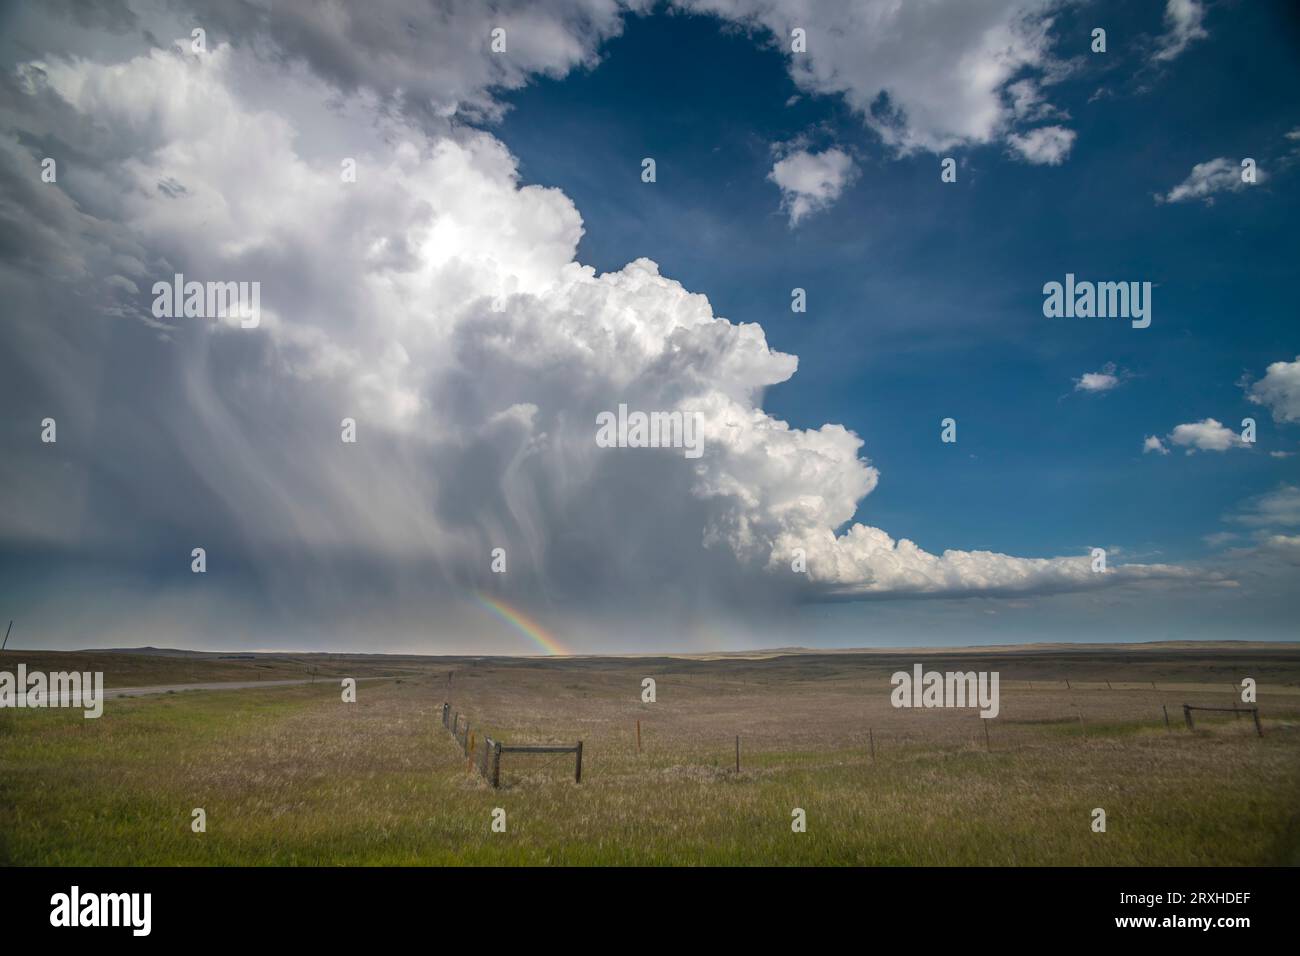 Le enormi piogge di thunderhead e la grandine nella prateria del sud-est del Wyoming offrono un meraviglioso arcobaleno per chi si trova in questo lato della tempesta Foto Stock